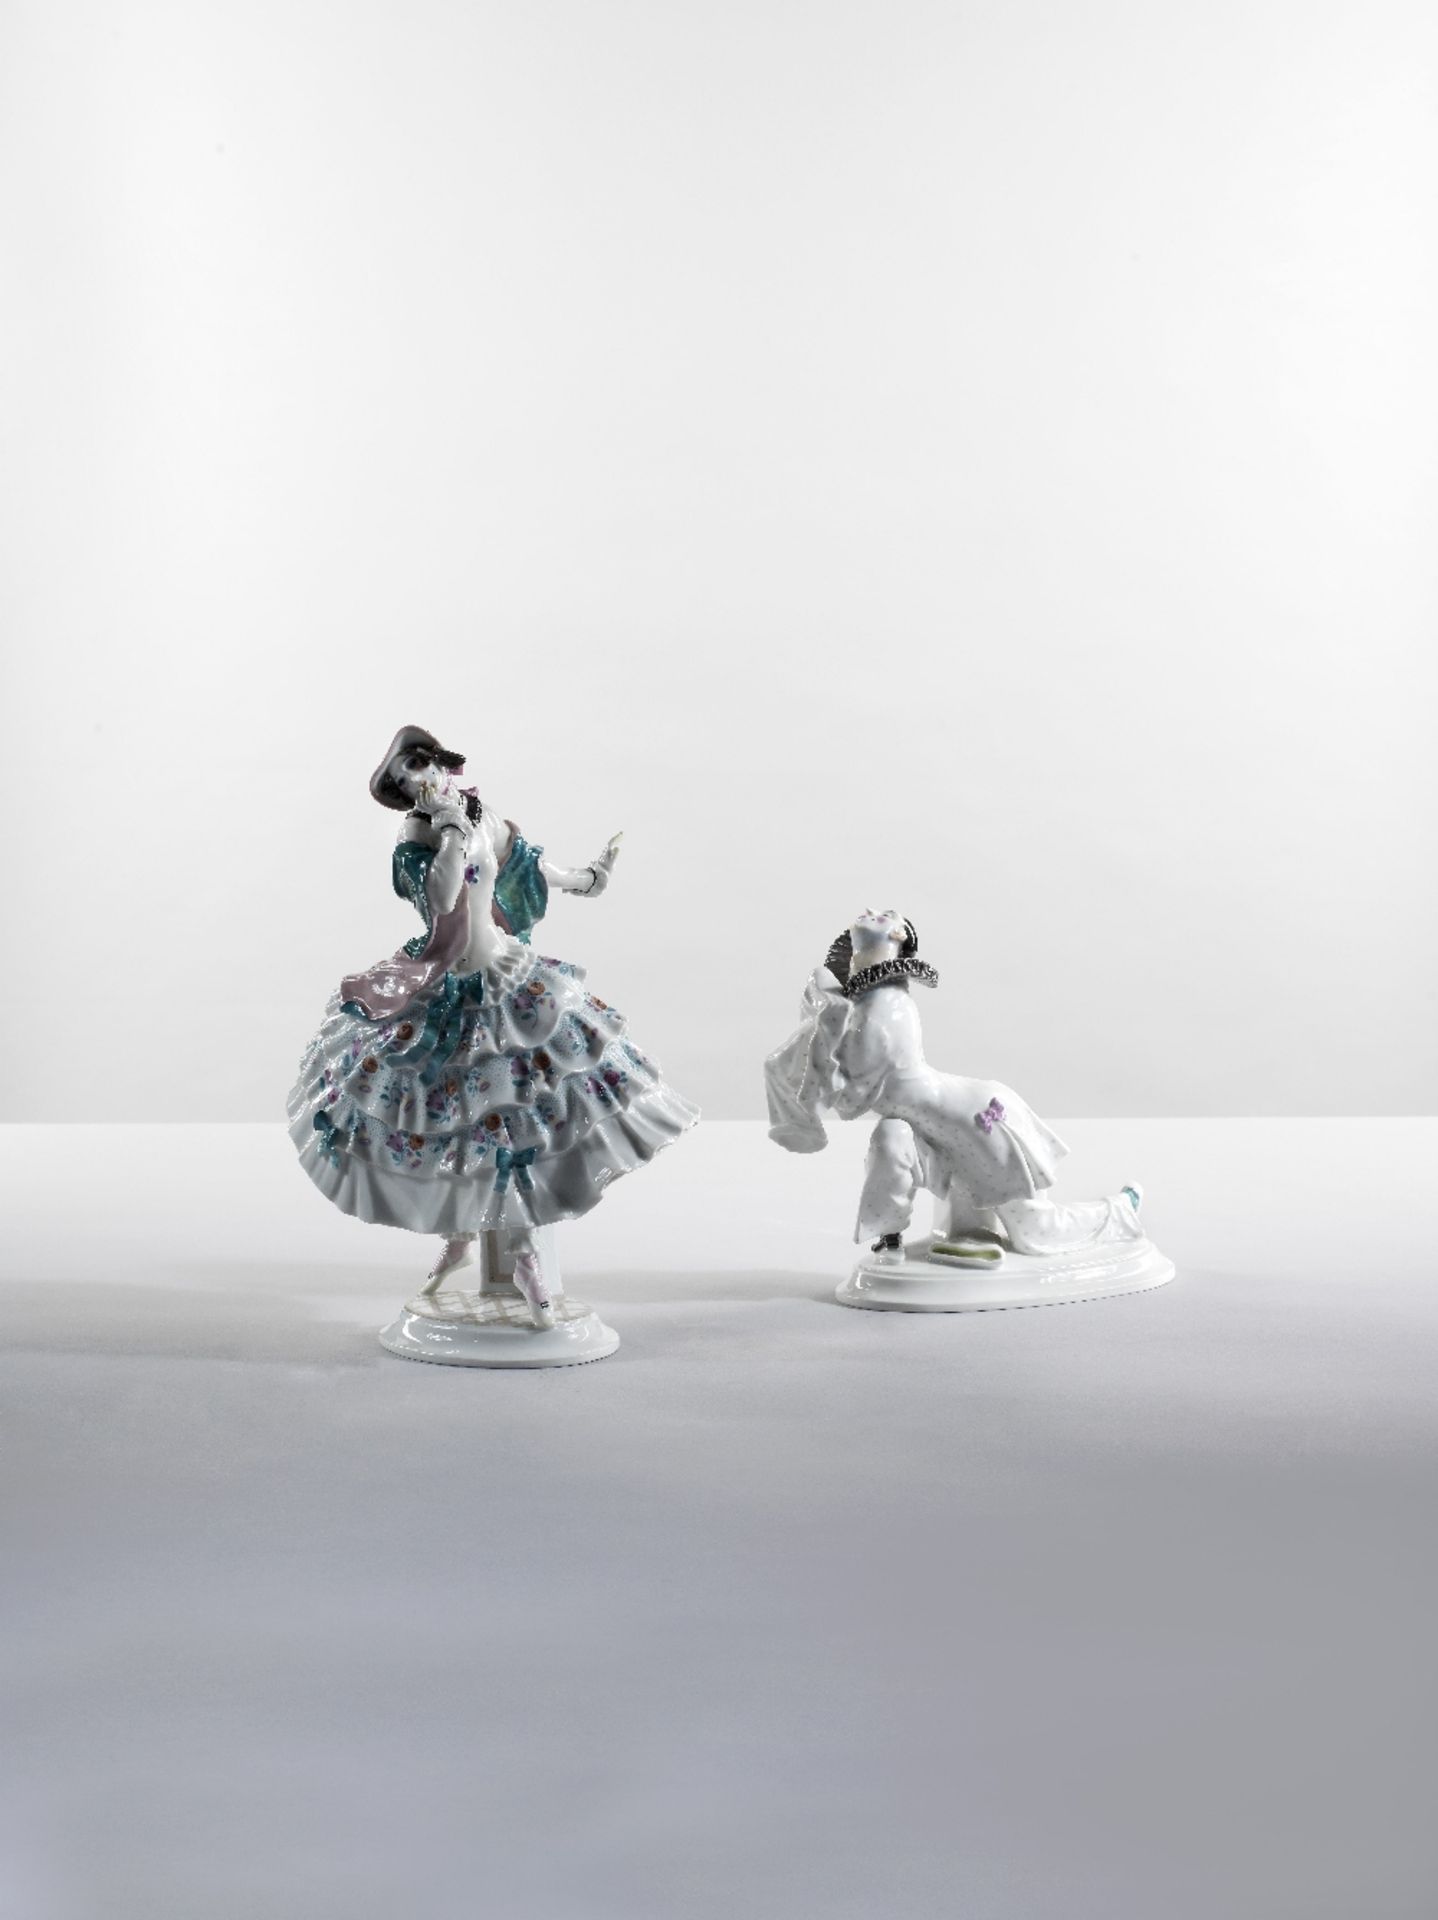 Suite de cinq personnages en porcelaine issus du ballet 'Le Carnaval' des Ballets Russes, circa 1... - Image 5 of 10